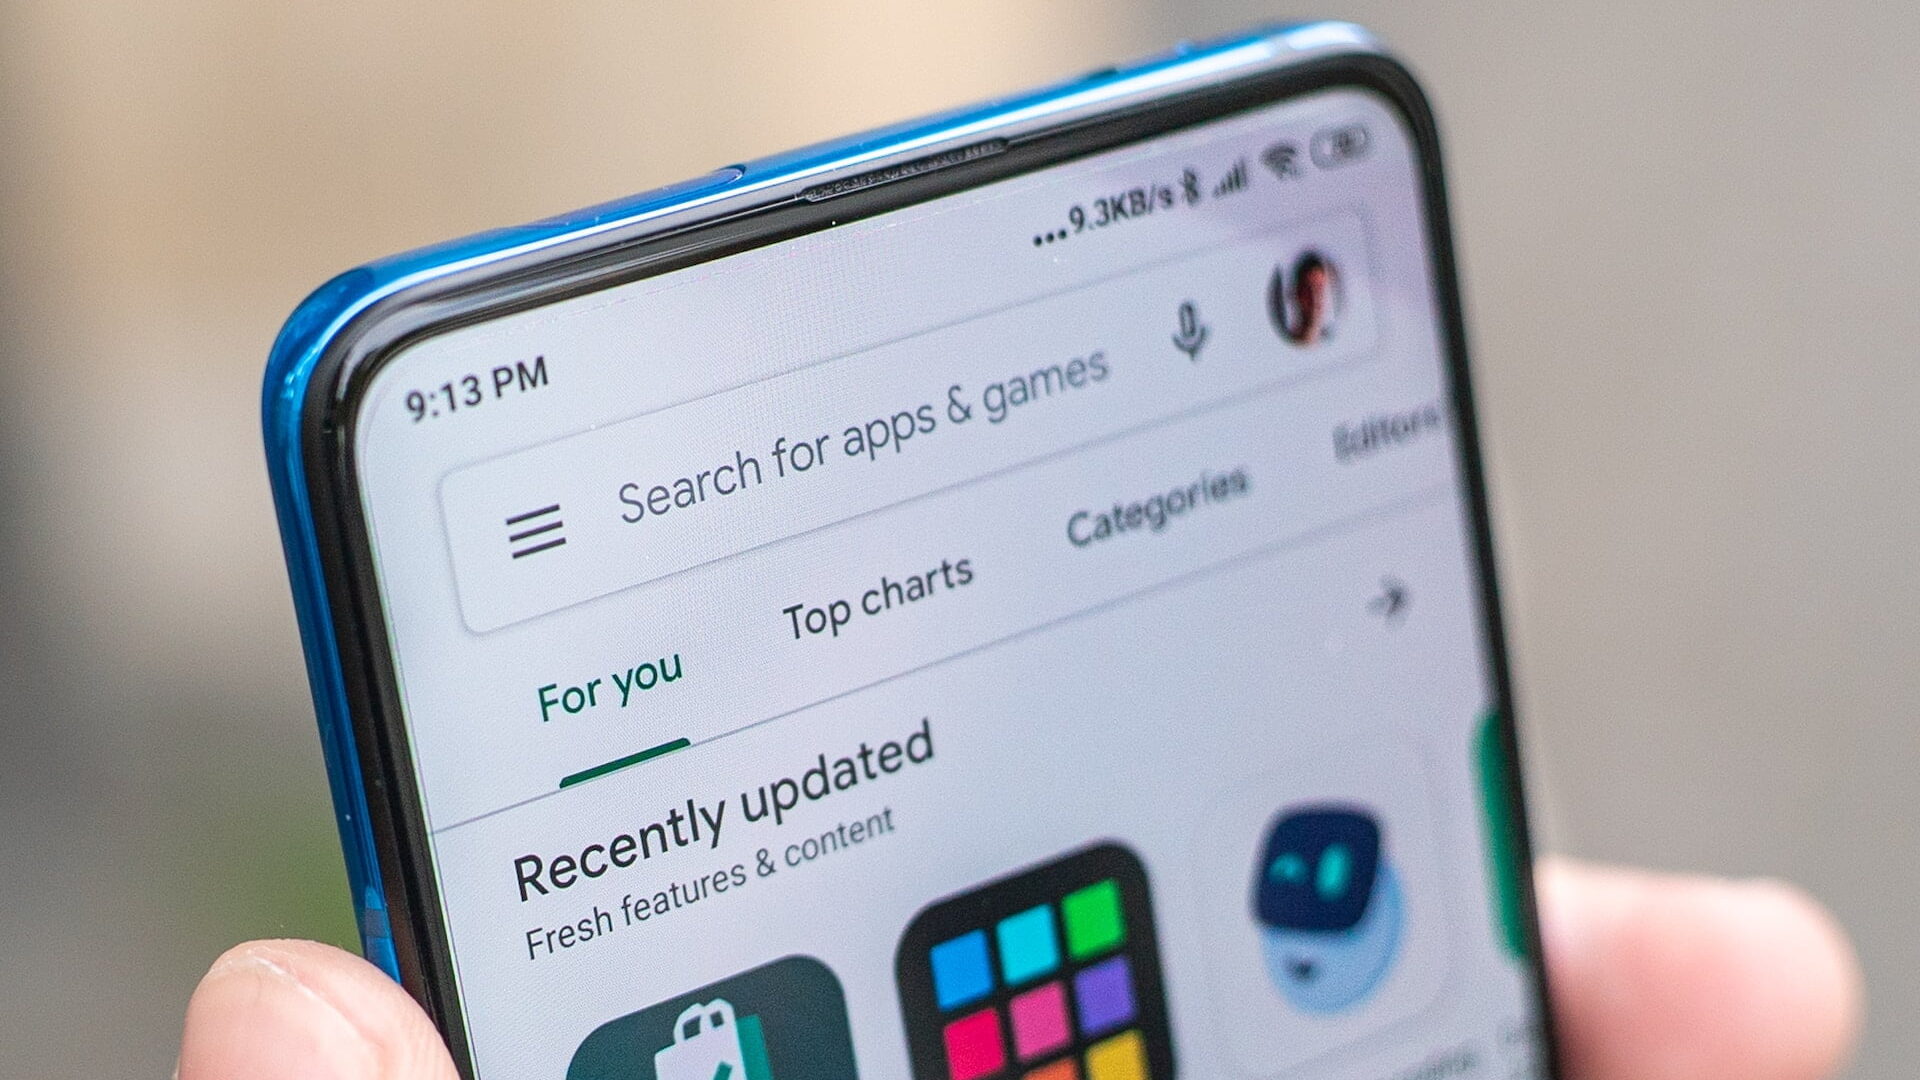 Ekran smartfona wyświetlający sklep z aplikacjami z widoczną wyszukiwarką i kartami "Dla Ciebie", "Top charts" oraz "Kategorie".